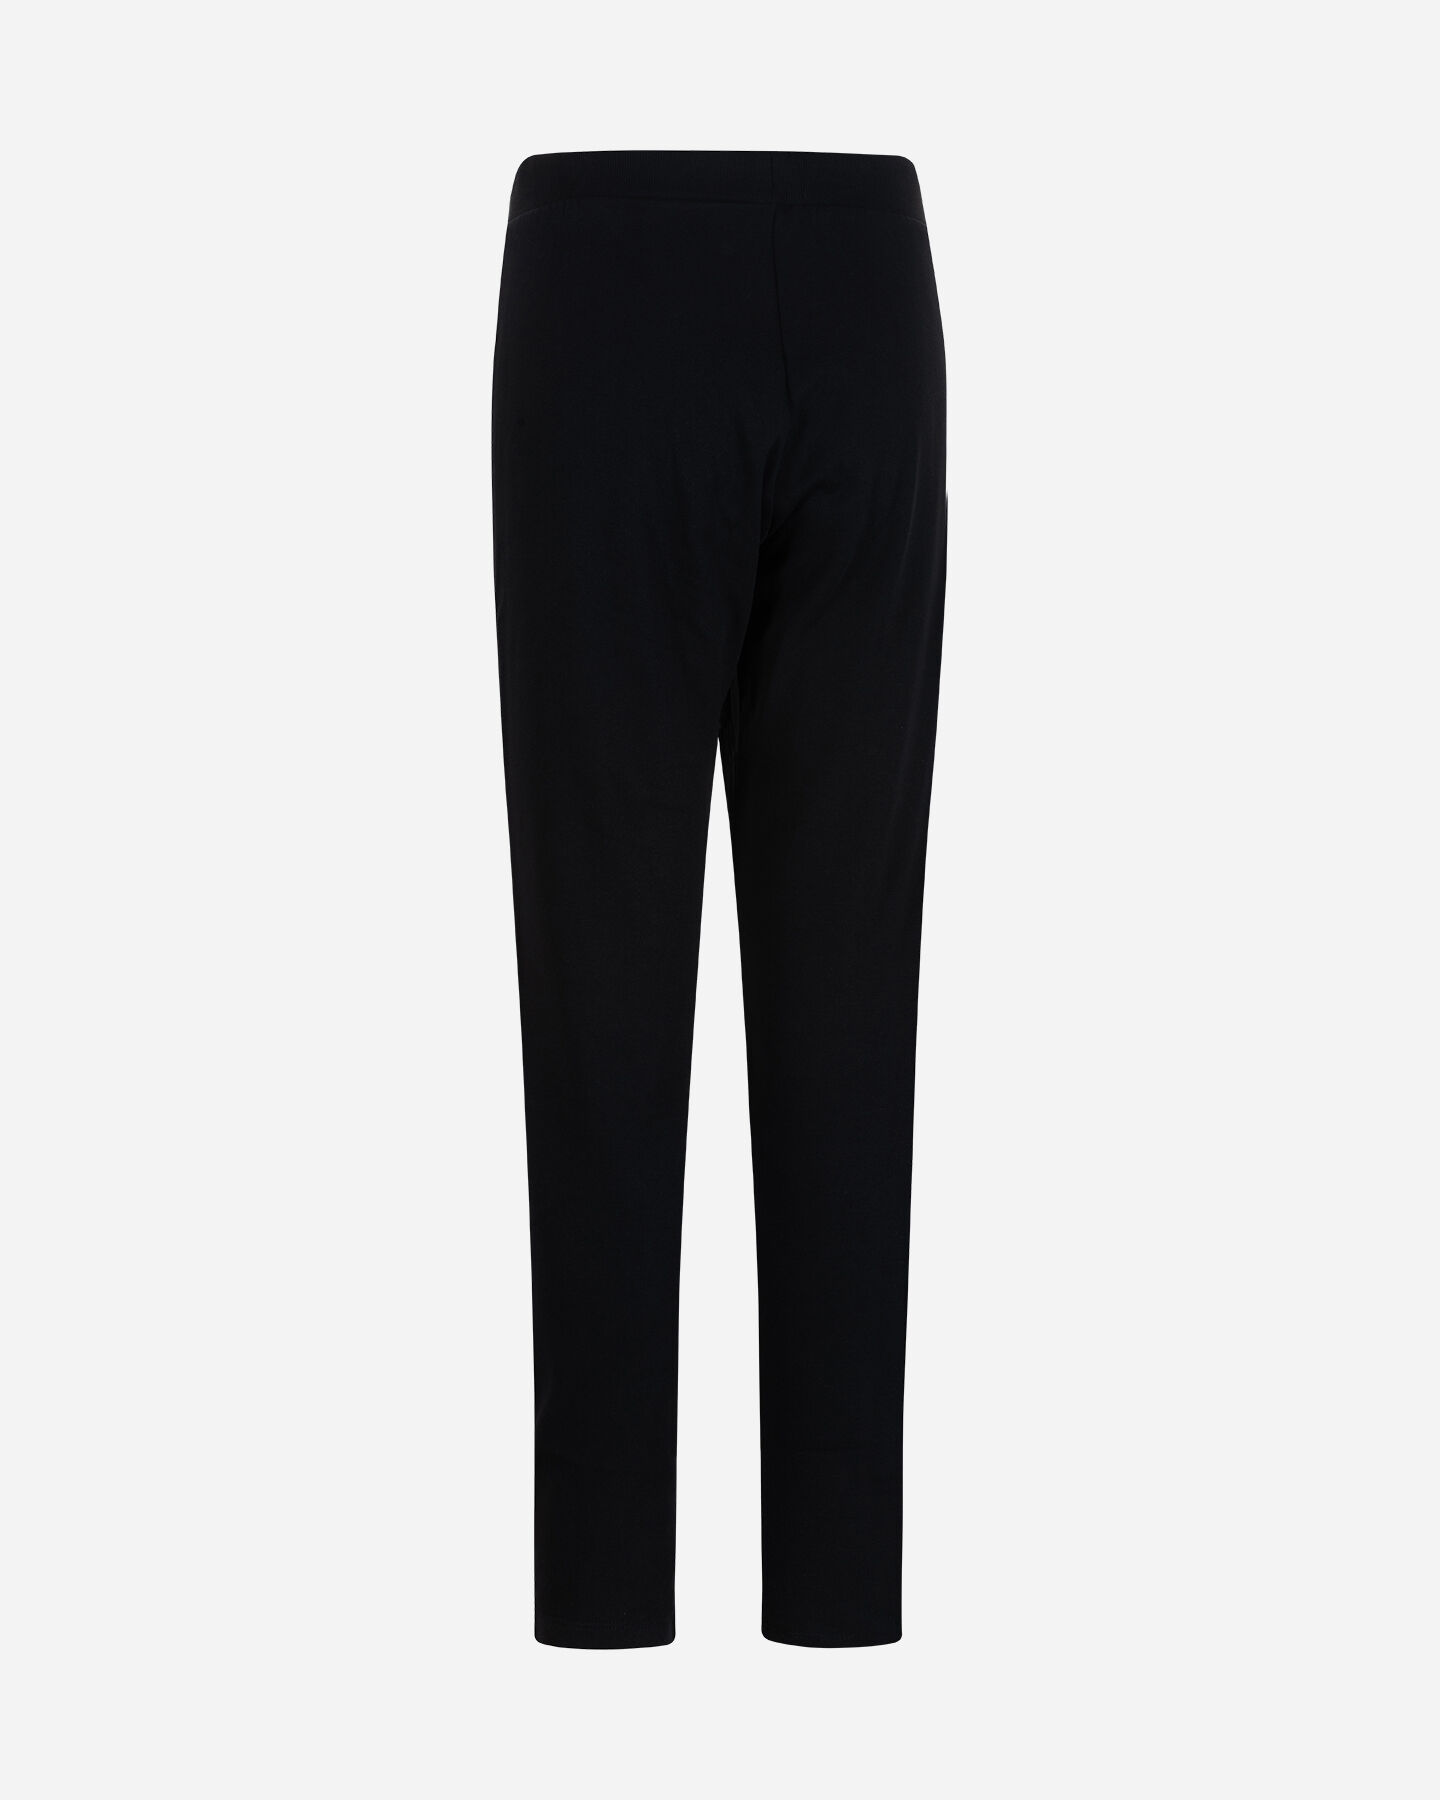  Pantalone FREDDY SMALL LOGO W S5617323|N-|XL scatto 1